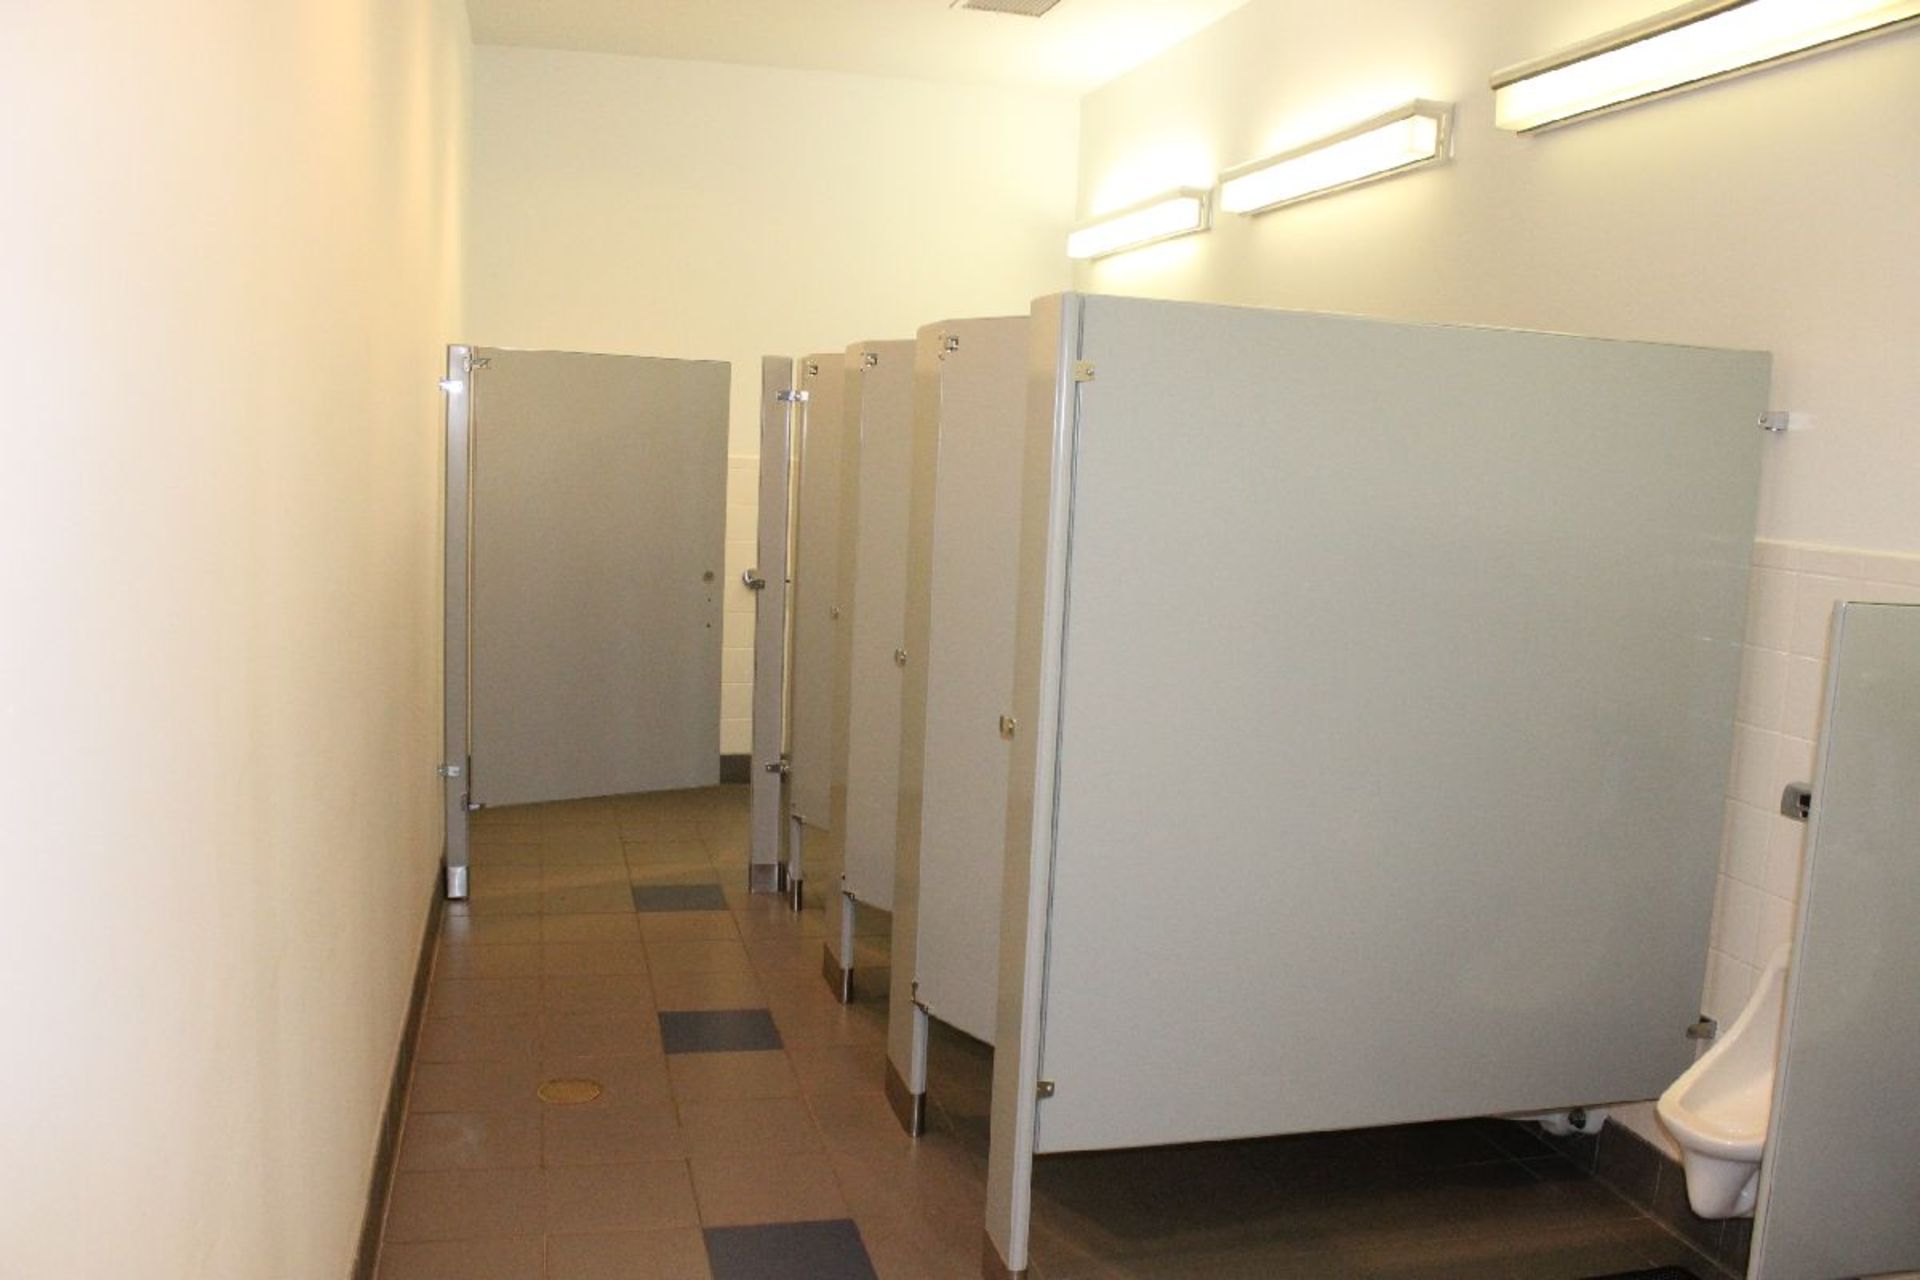 CONTENTS OF MEN'S BATHROOM INCLUDING DOOR TO MEN'S ROOM - Image 4 of 5